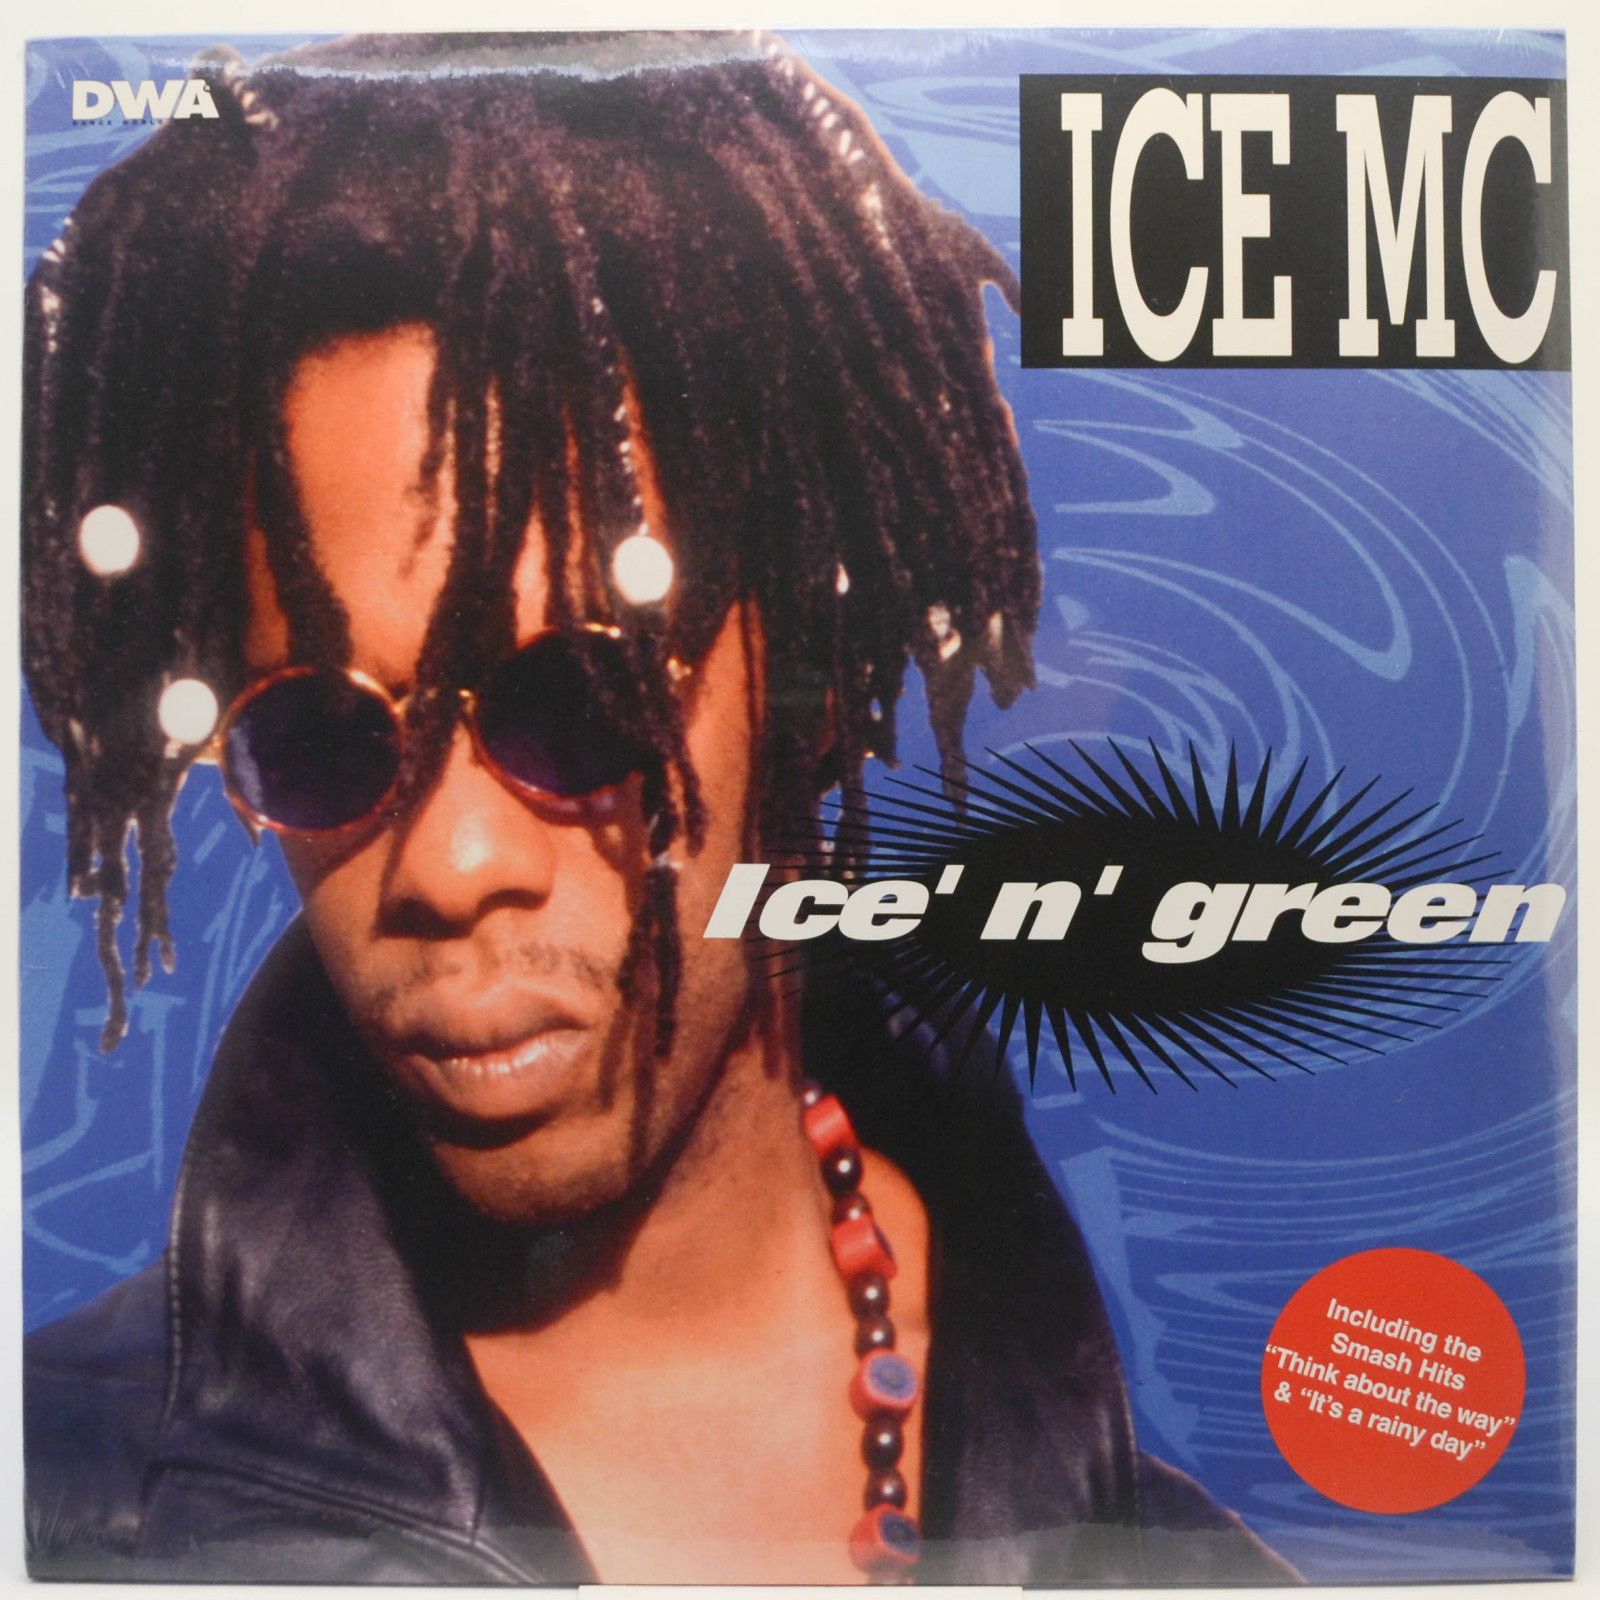 ICE MC — Ice' N' Green, 1994